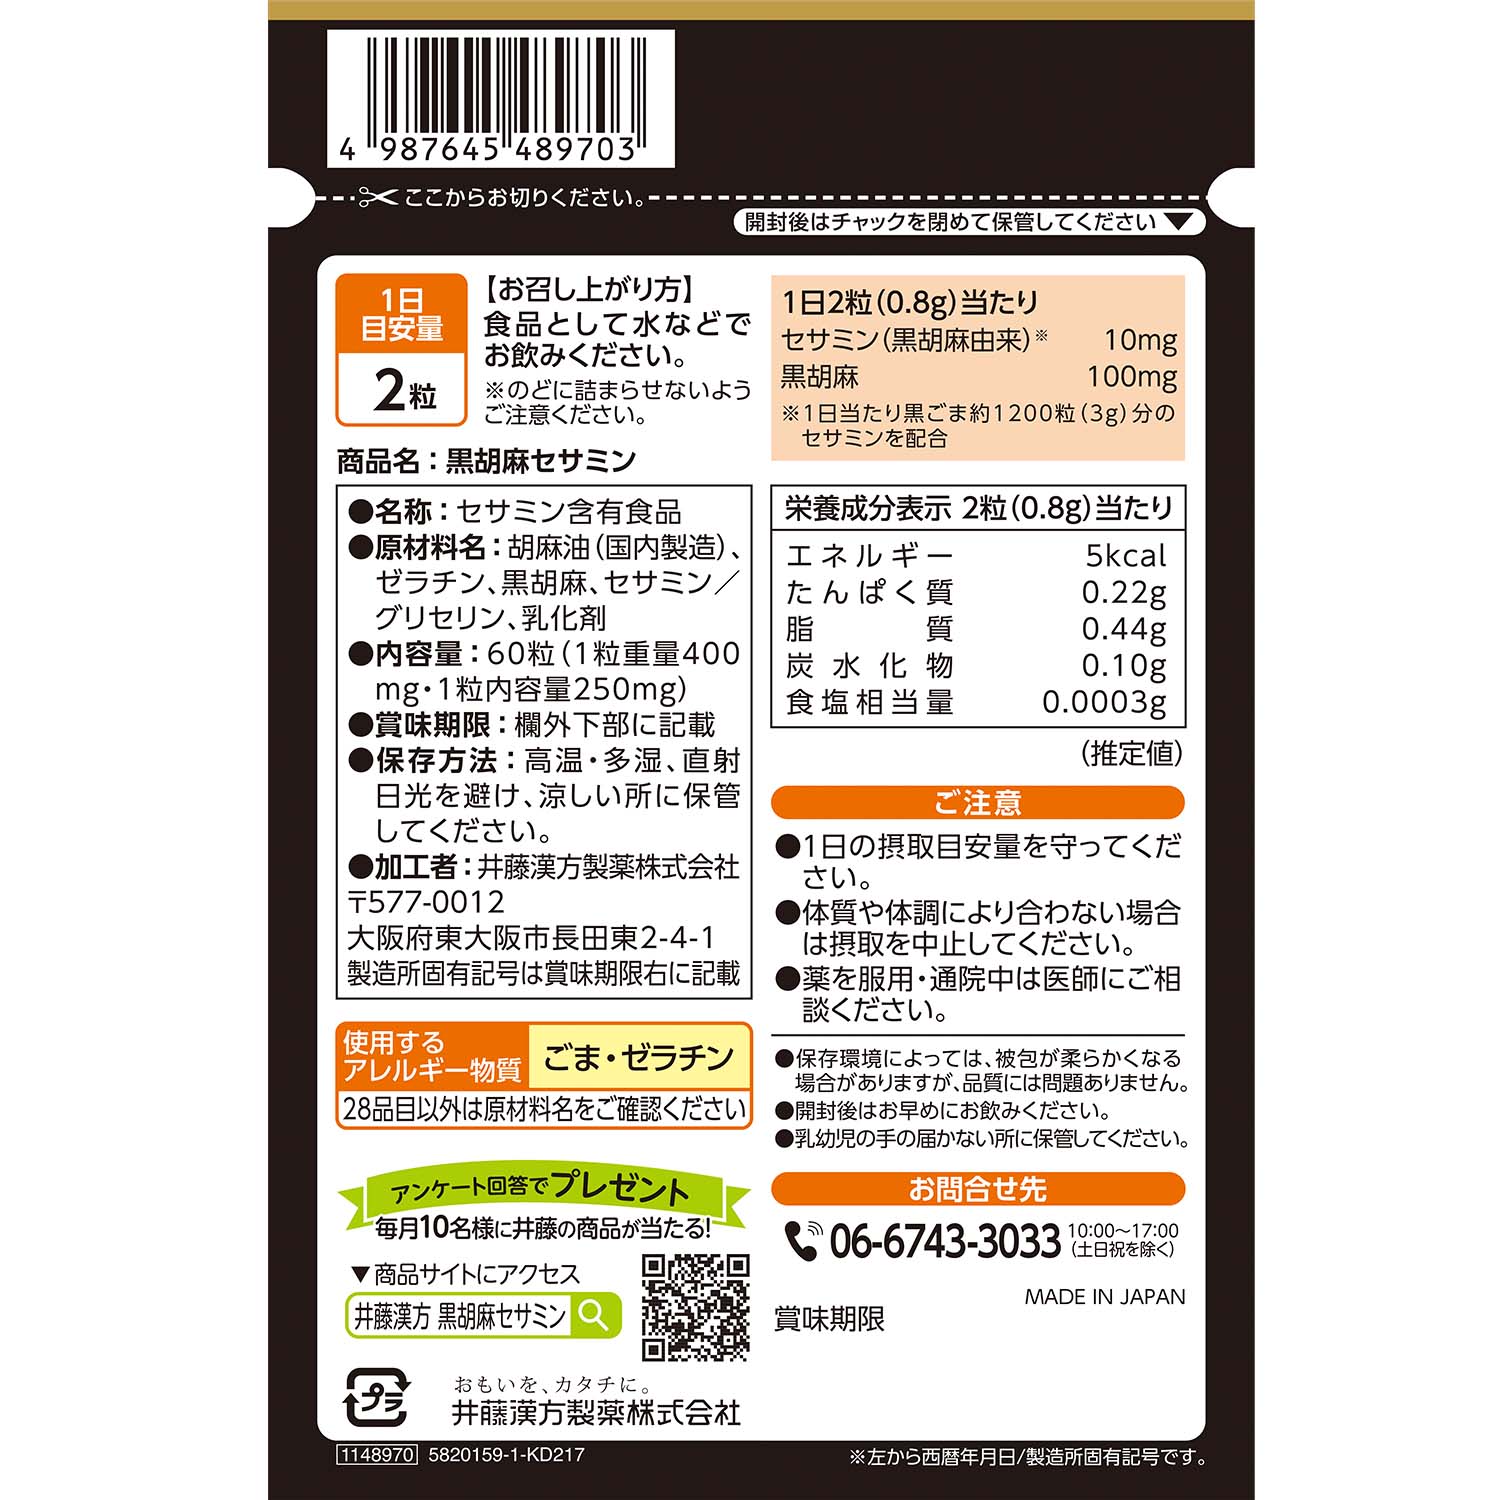 黒胡麻セサミン | 健康食品のことなら井藤漢方製薬